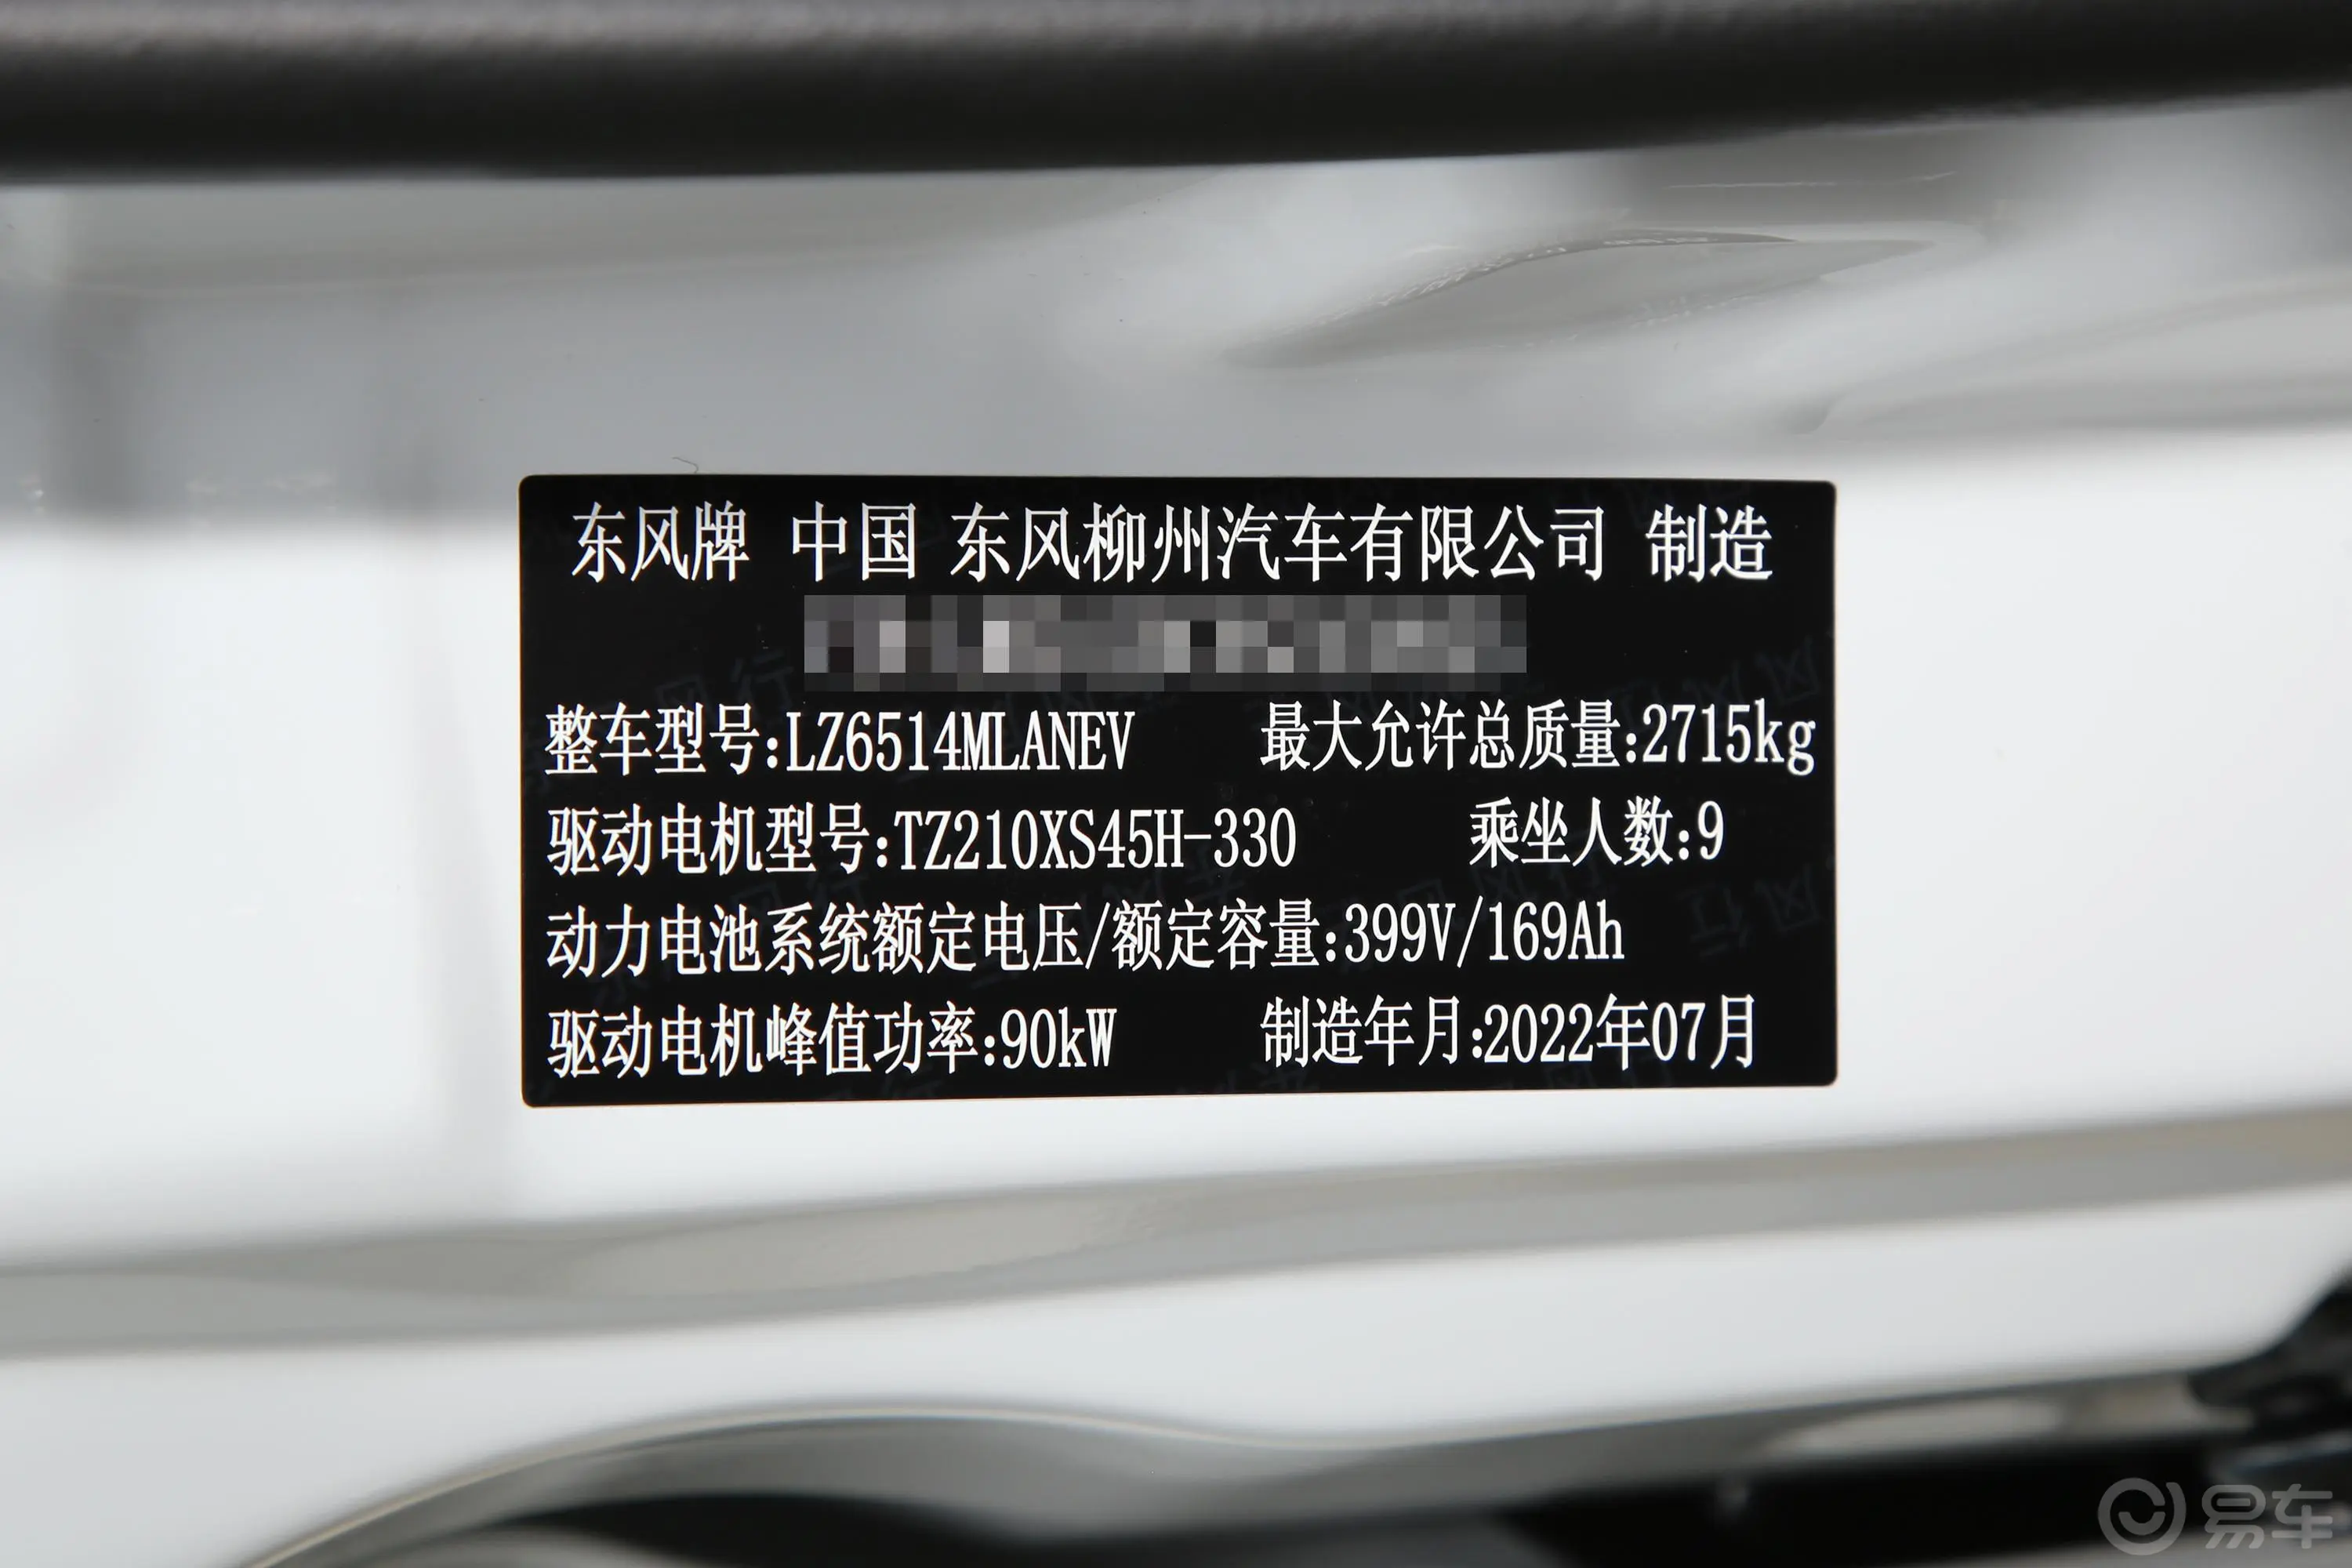 菱智M5 EV普通版 401km 基本型 9座车辆信息铭牌